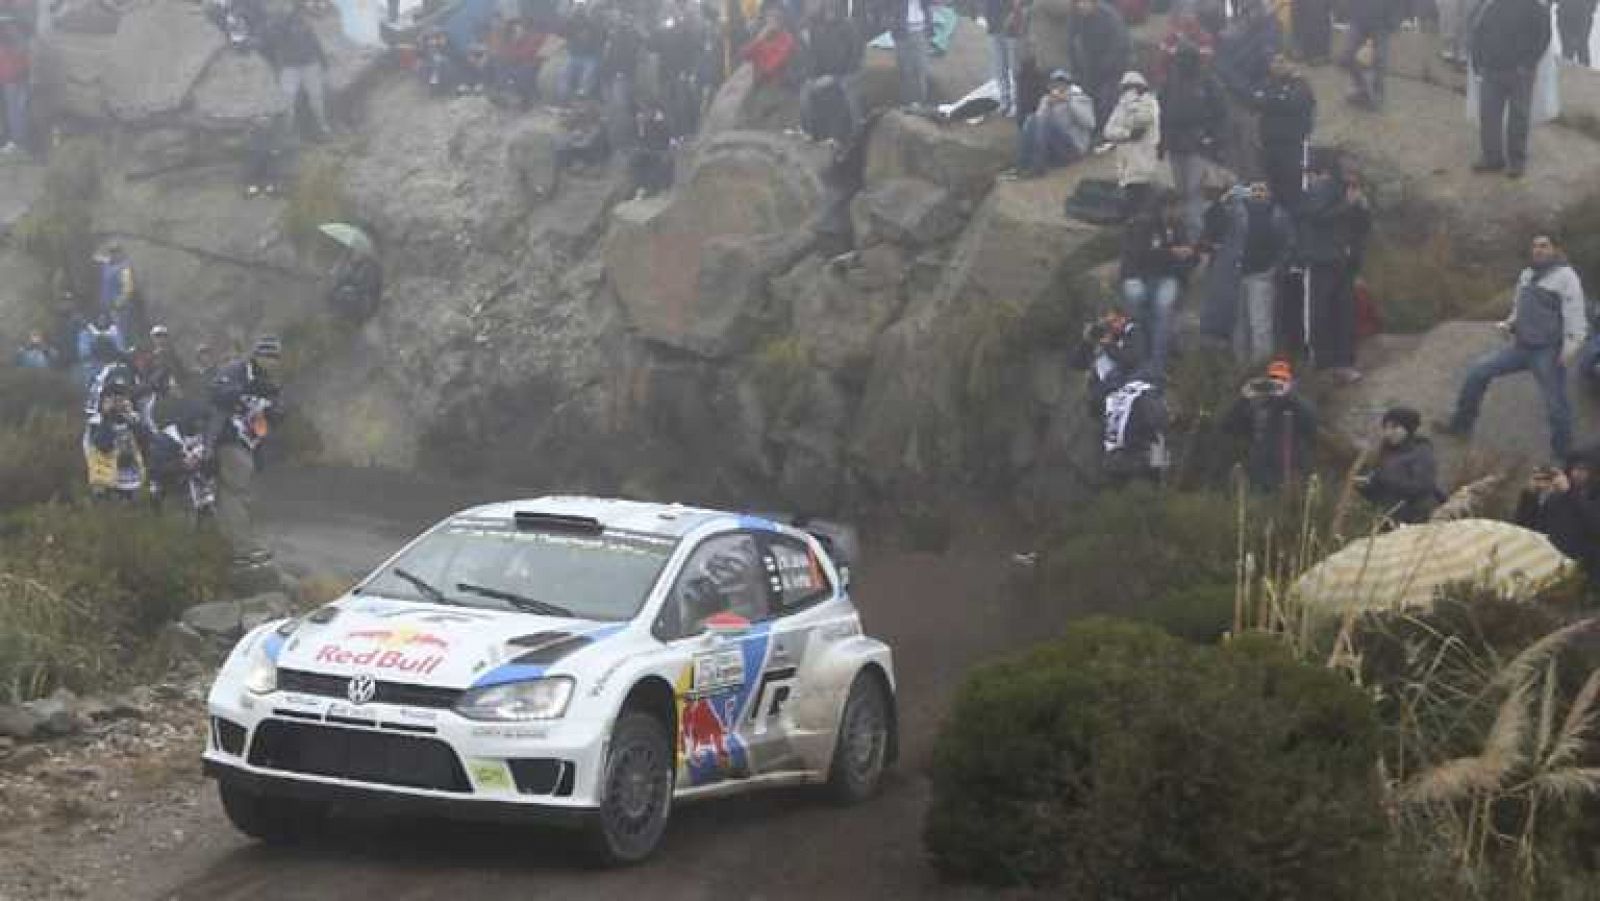 Automovilismo - Campeonato del mundo 'Rally Argentina' - Resumen 3ª jornada